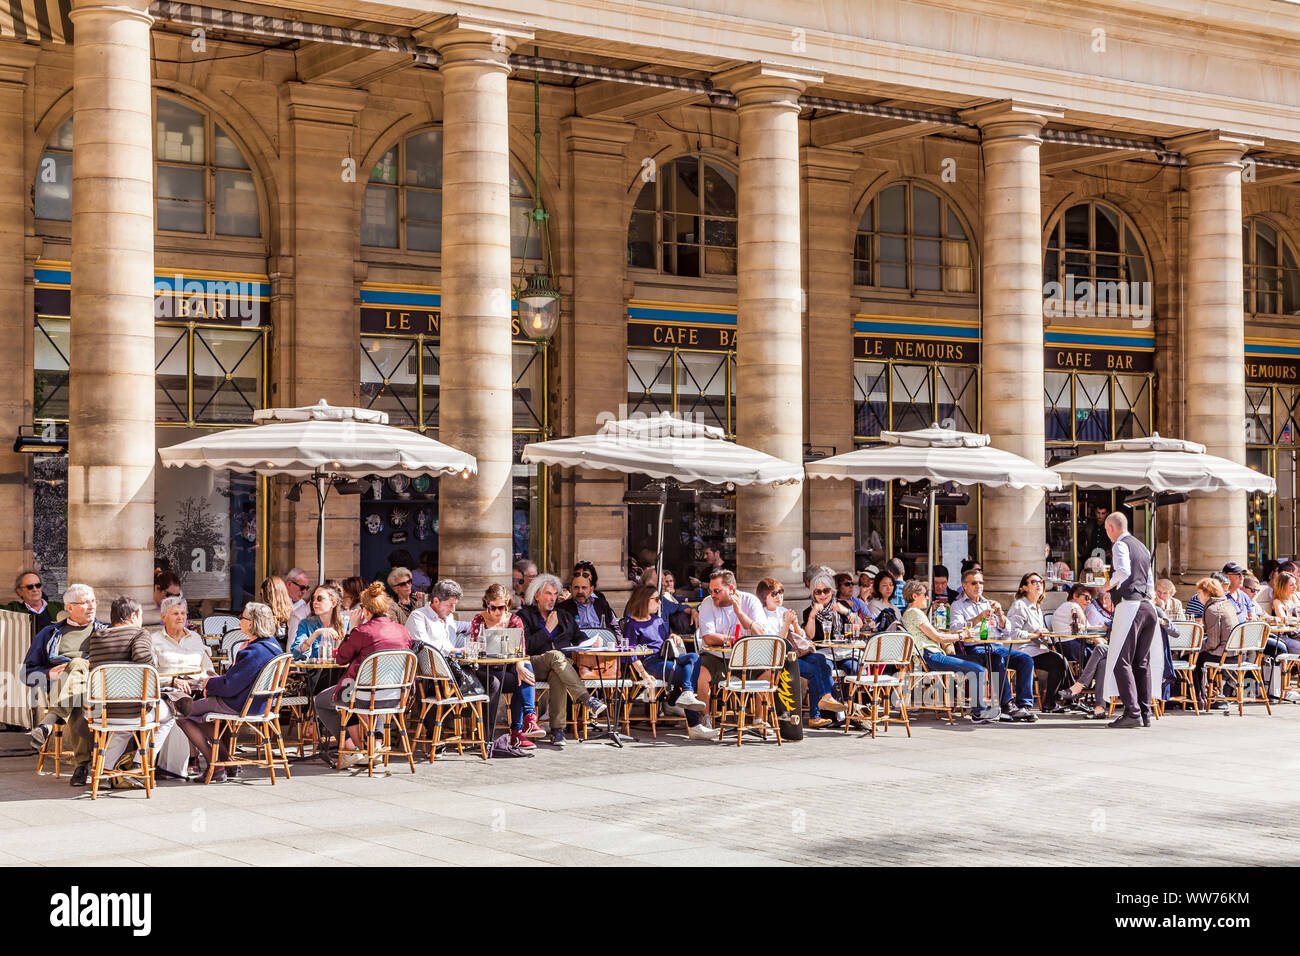 France, Paris, city centre, Place Colette, Le Nemours Cafe Bar Restaurant,  Terrace Stock Photo - Alamy